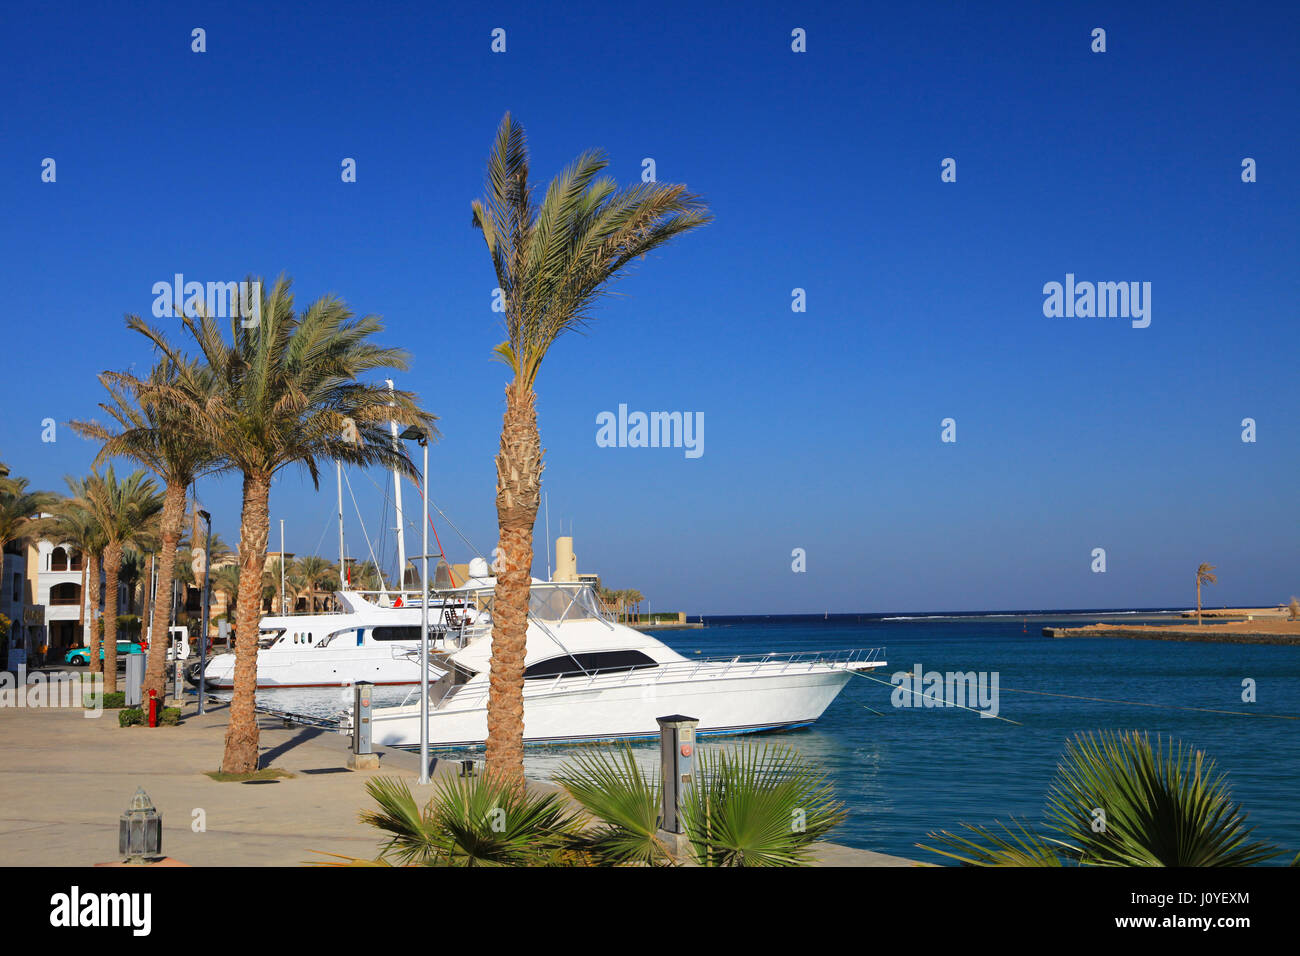 PORT GHALIB, Ägypten - 2. April 2017: Port Ghalib, einen schönen Hafen, Yachthafen und touristischen Stadt in der Nähe von Marsa Alam, Ägypten Stockfoto